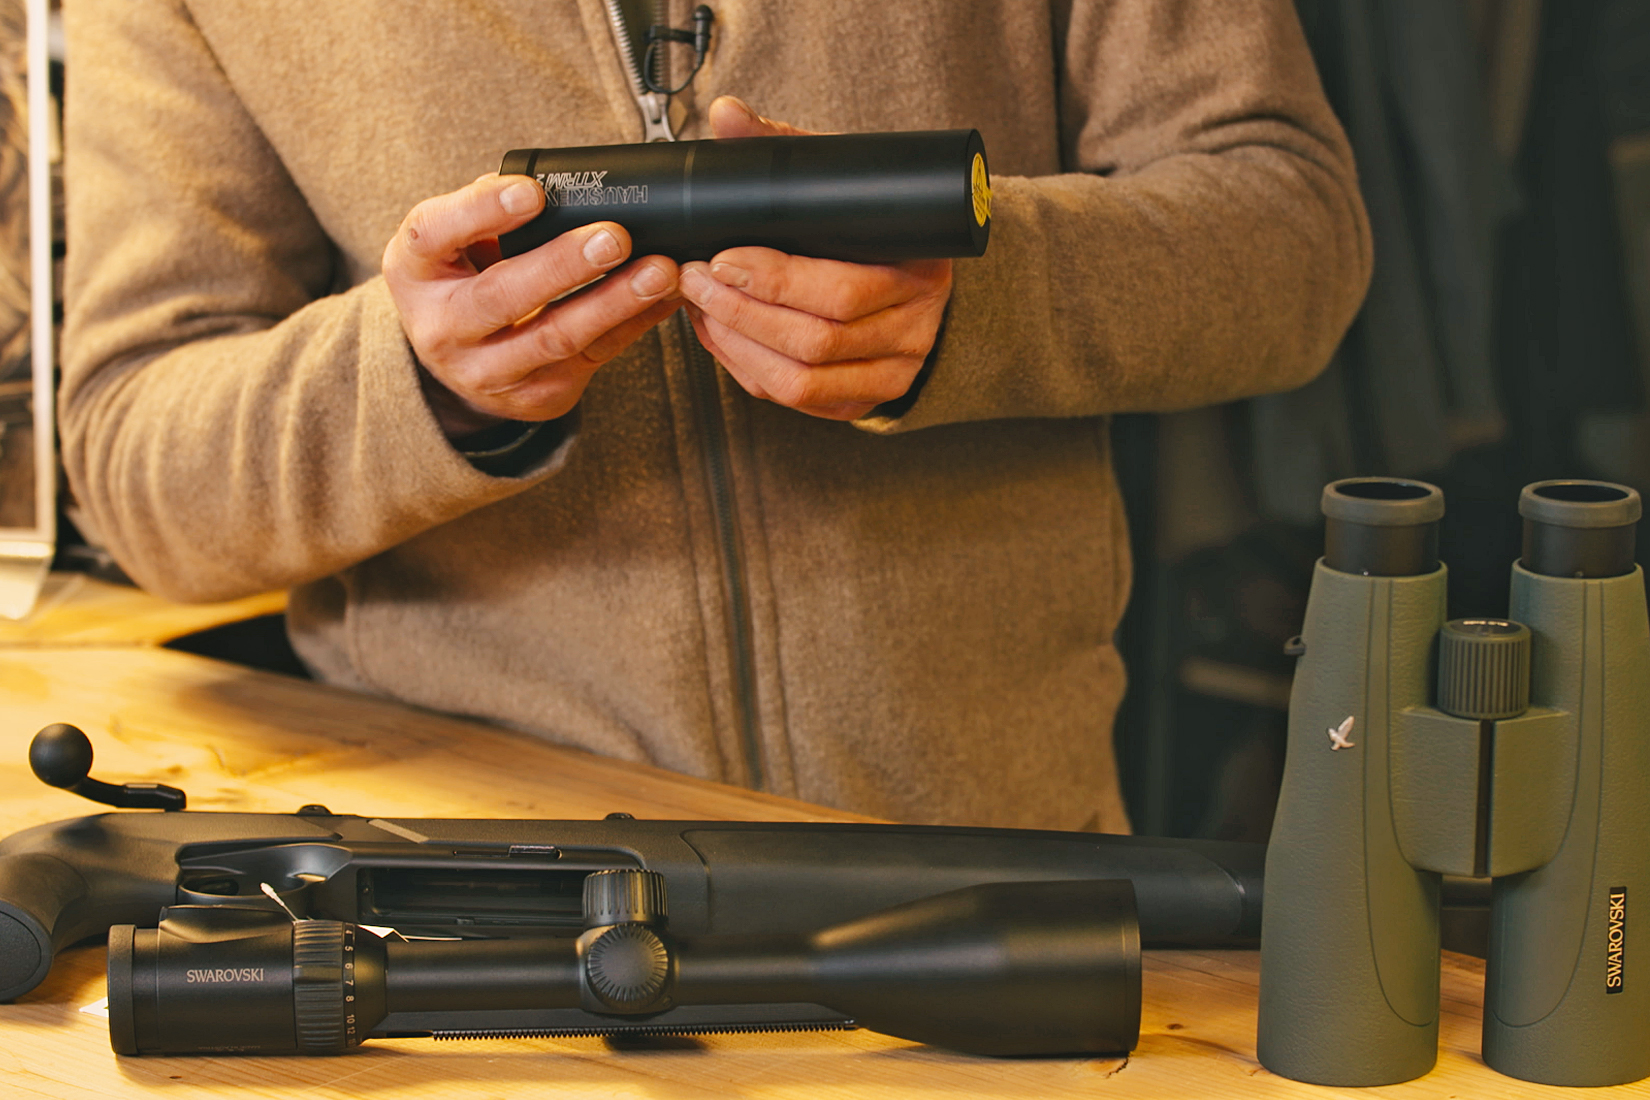 Erstausrüstung für Jungjäger: So findest Du eine passende Jagdwaffe, Zielfernrohr und Fernglas